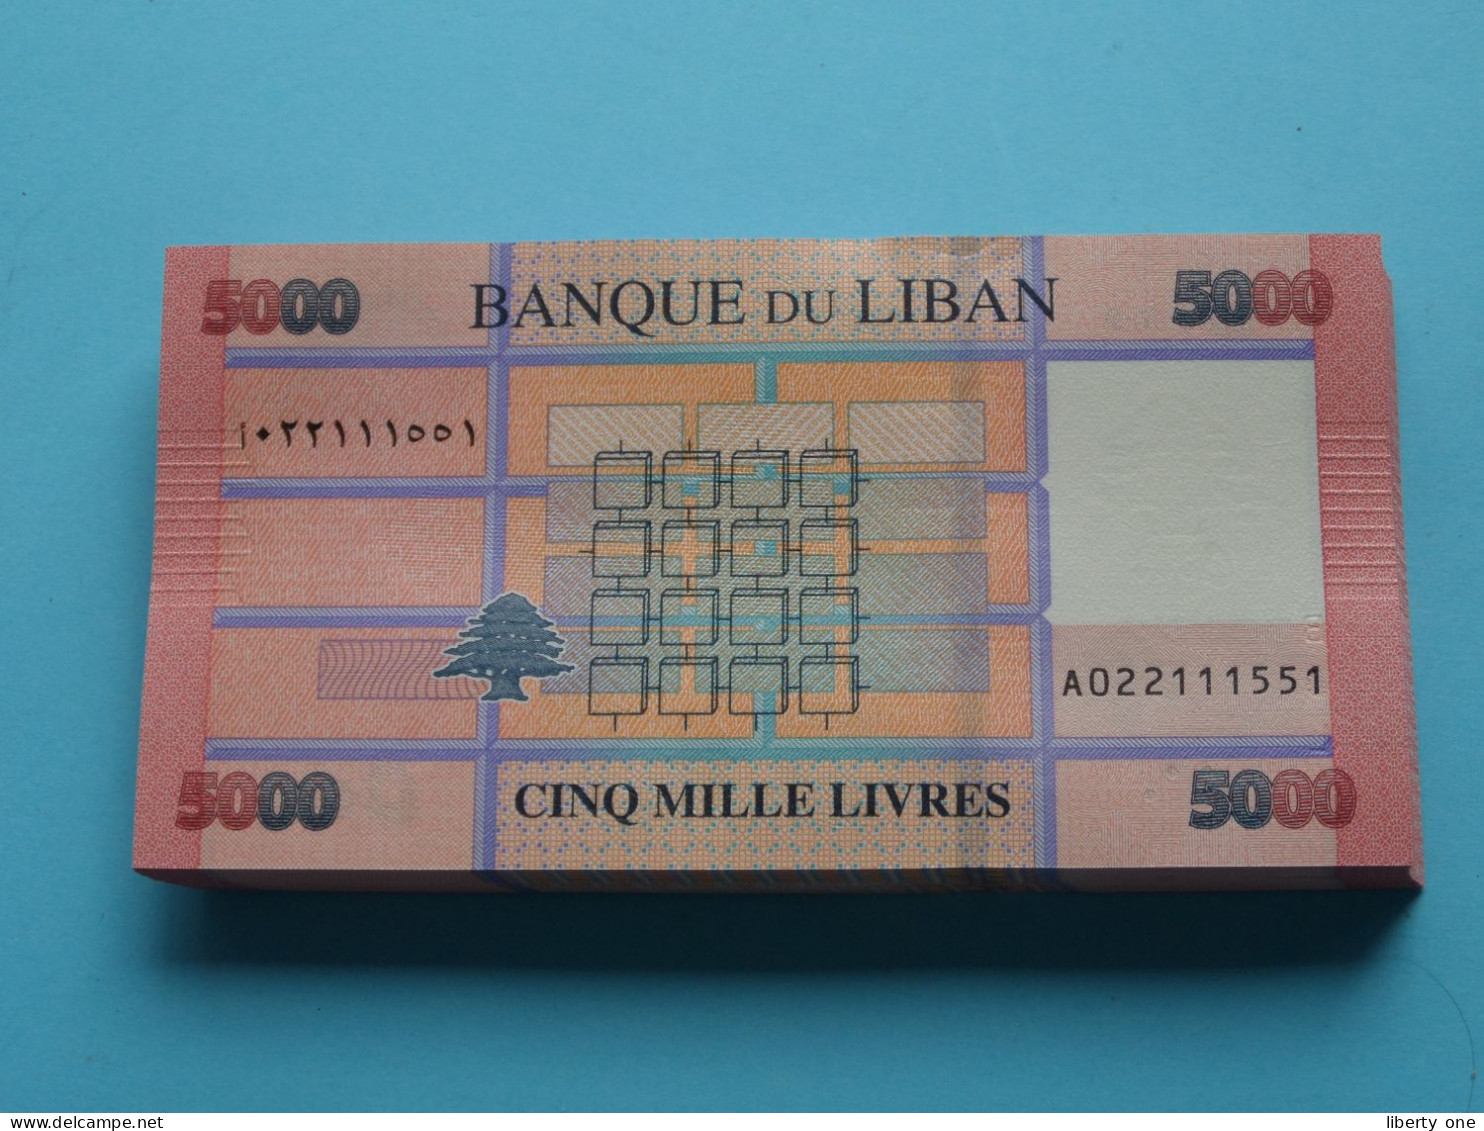 5000 Cinq Mille Livres ( Banque Du Liban ) Lebanon 2021 ( For Grade, Please See SCANS ) UNC ! - Libano